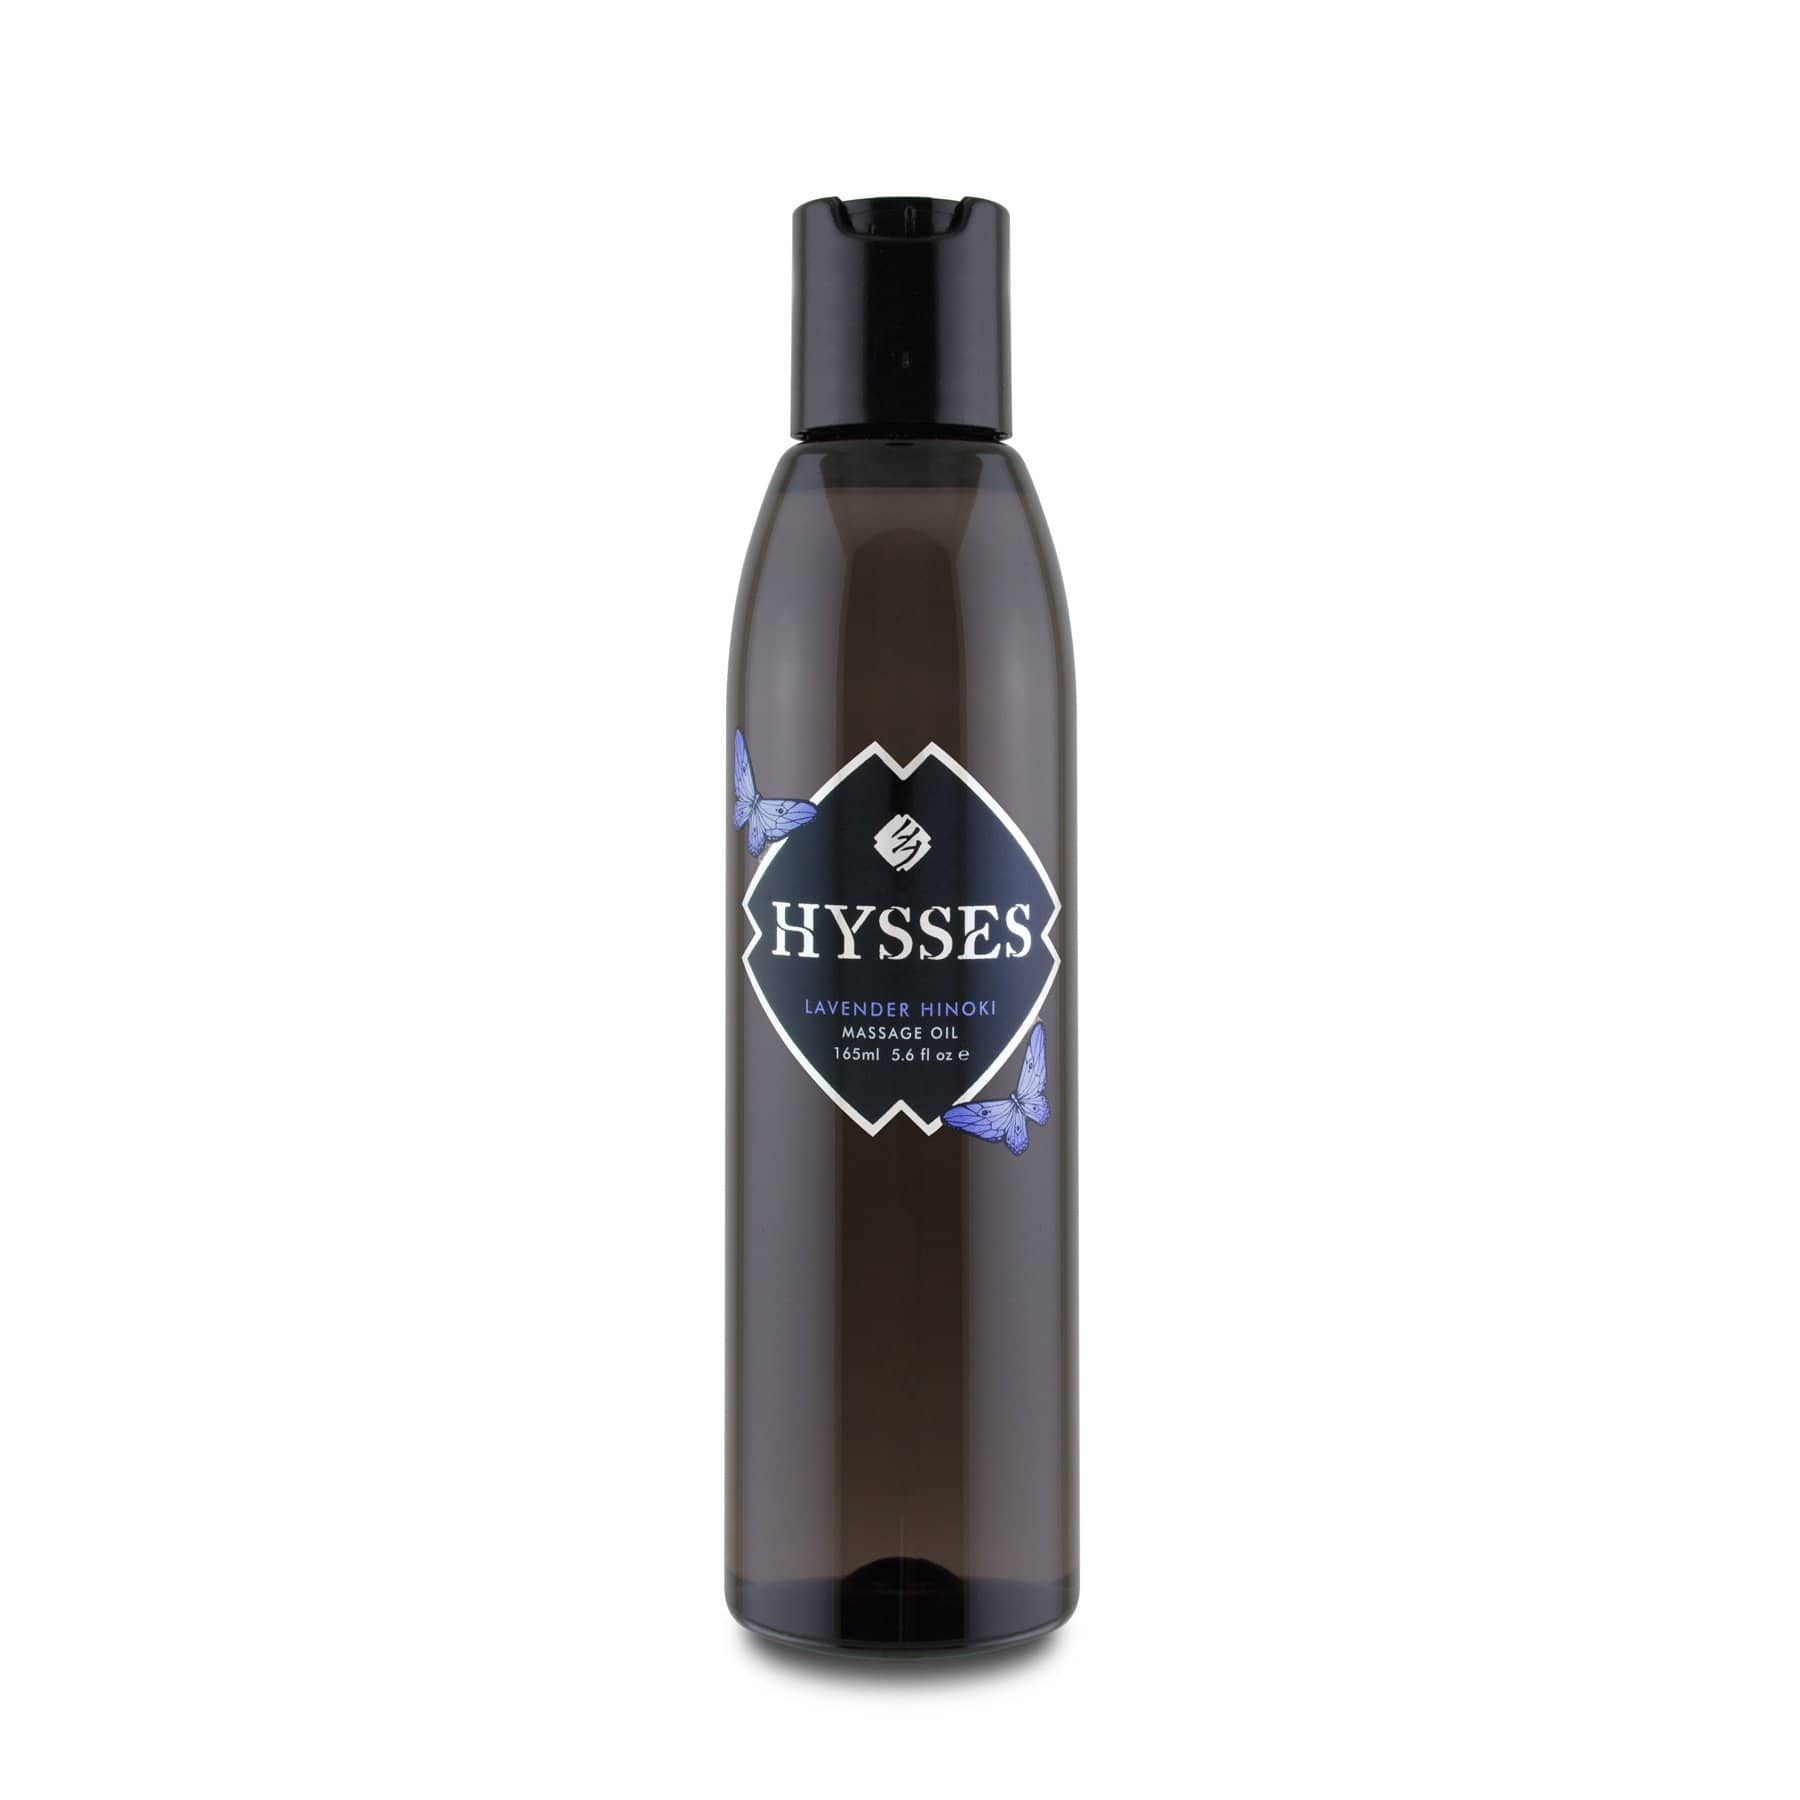 Hysses Body Care Massage Oil Lavender Hinoki